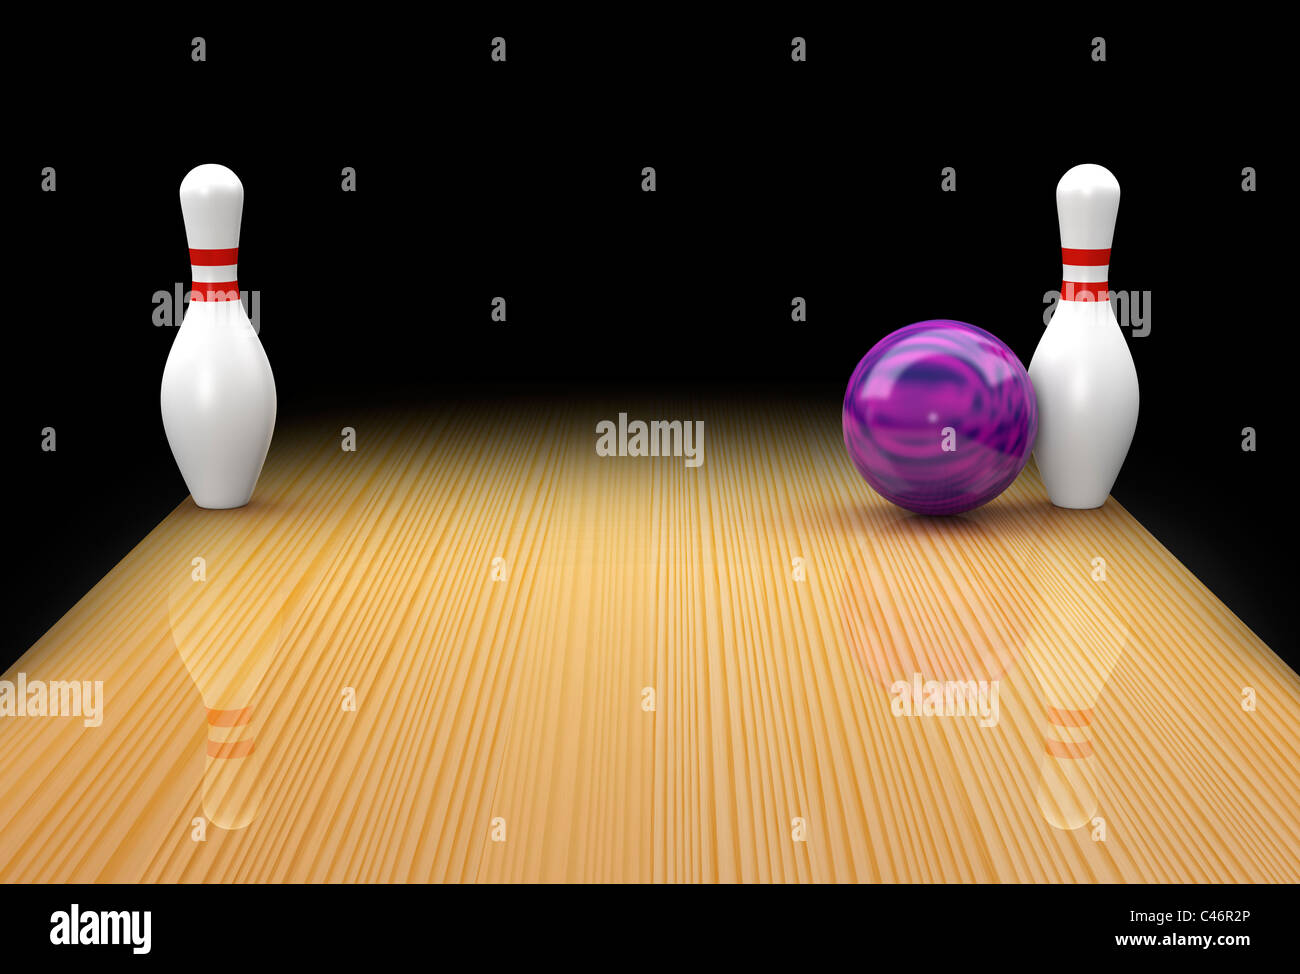 Ten pin bowling lane con sfera di malva in azione di prelevare un posti letto o gli occhi di serpente di ricambio su sfondo nero Foto Stock